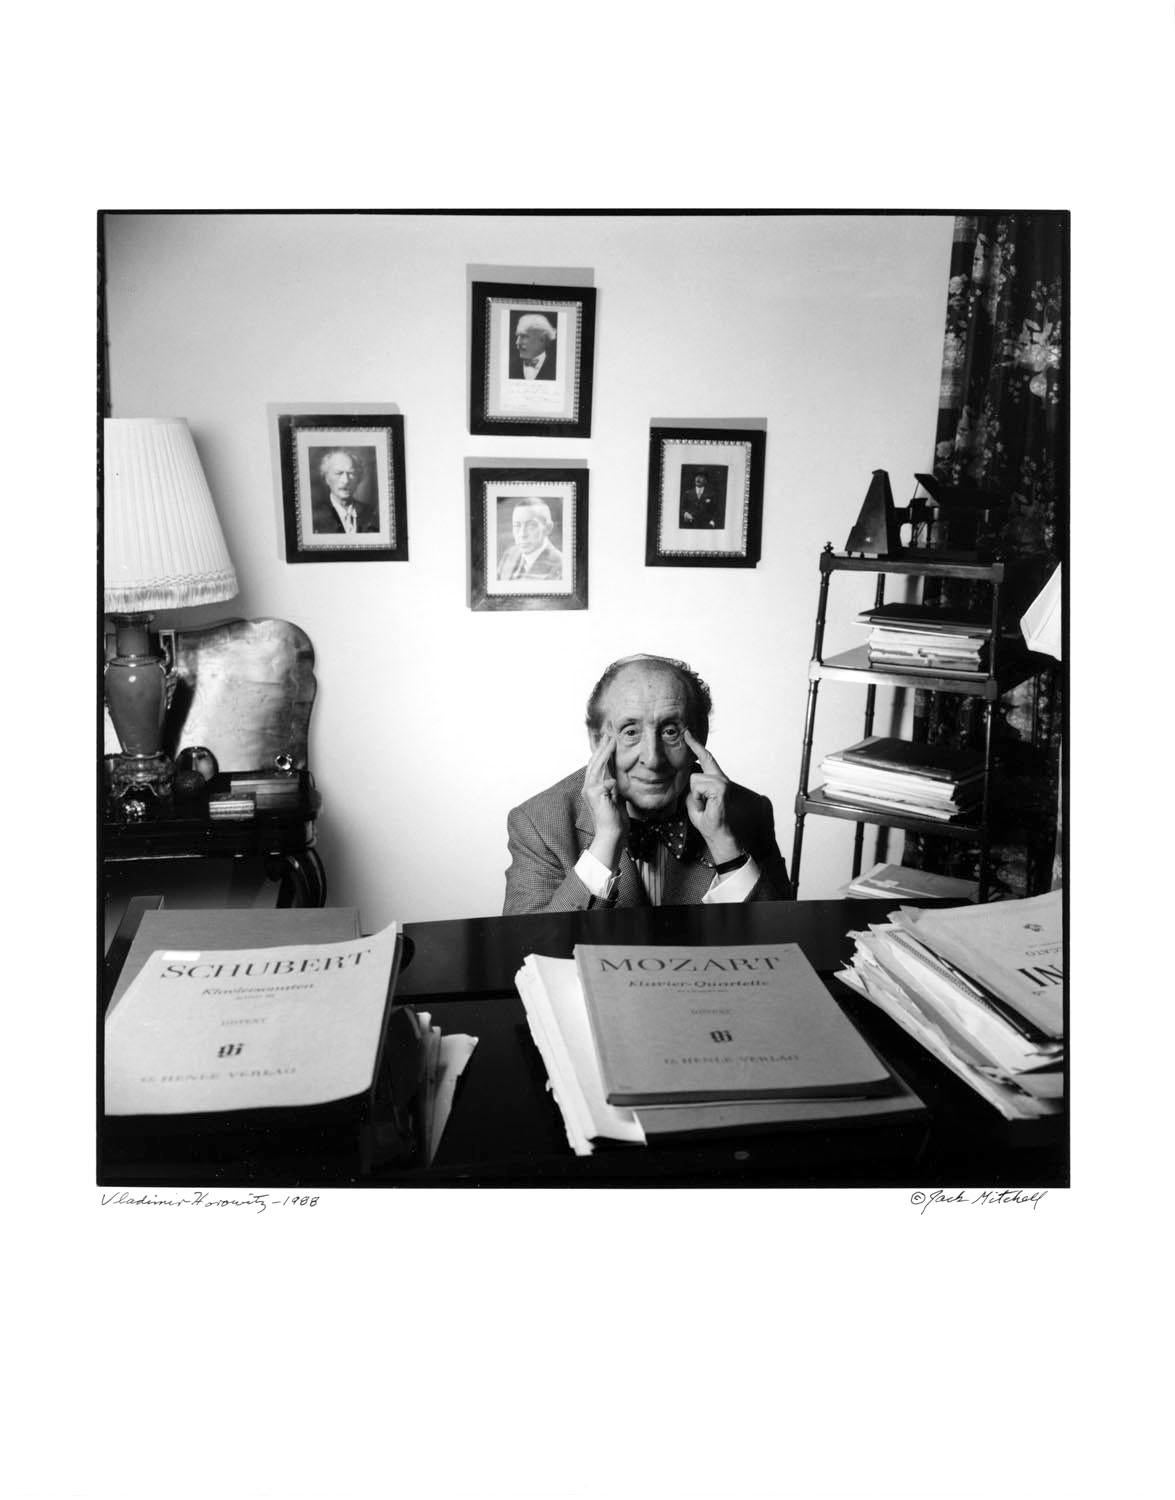 11 x 14" alte Silbergelatinefotografie des amerikanischen klassischen Pianisten und Komponisten Vladimir Horowitz, 1988. Signiert von Jack Mitchell auf der Vorderseite des Drucks. Kommt direkt aus dem Jack Mitchell Archiv mit einem